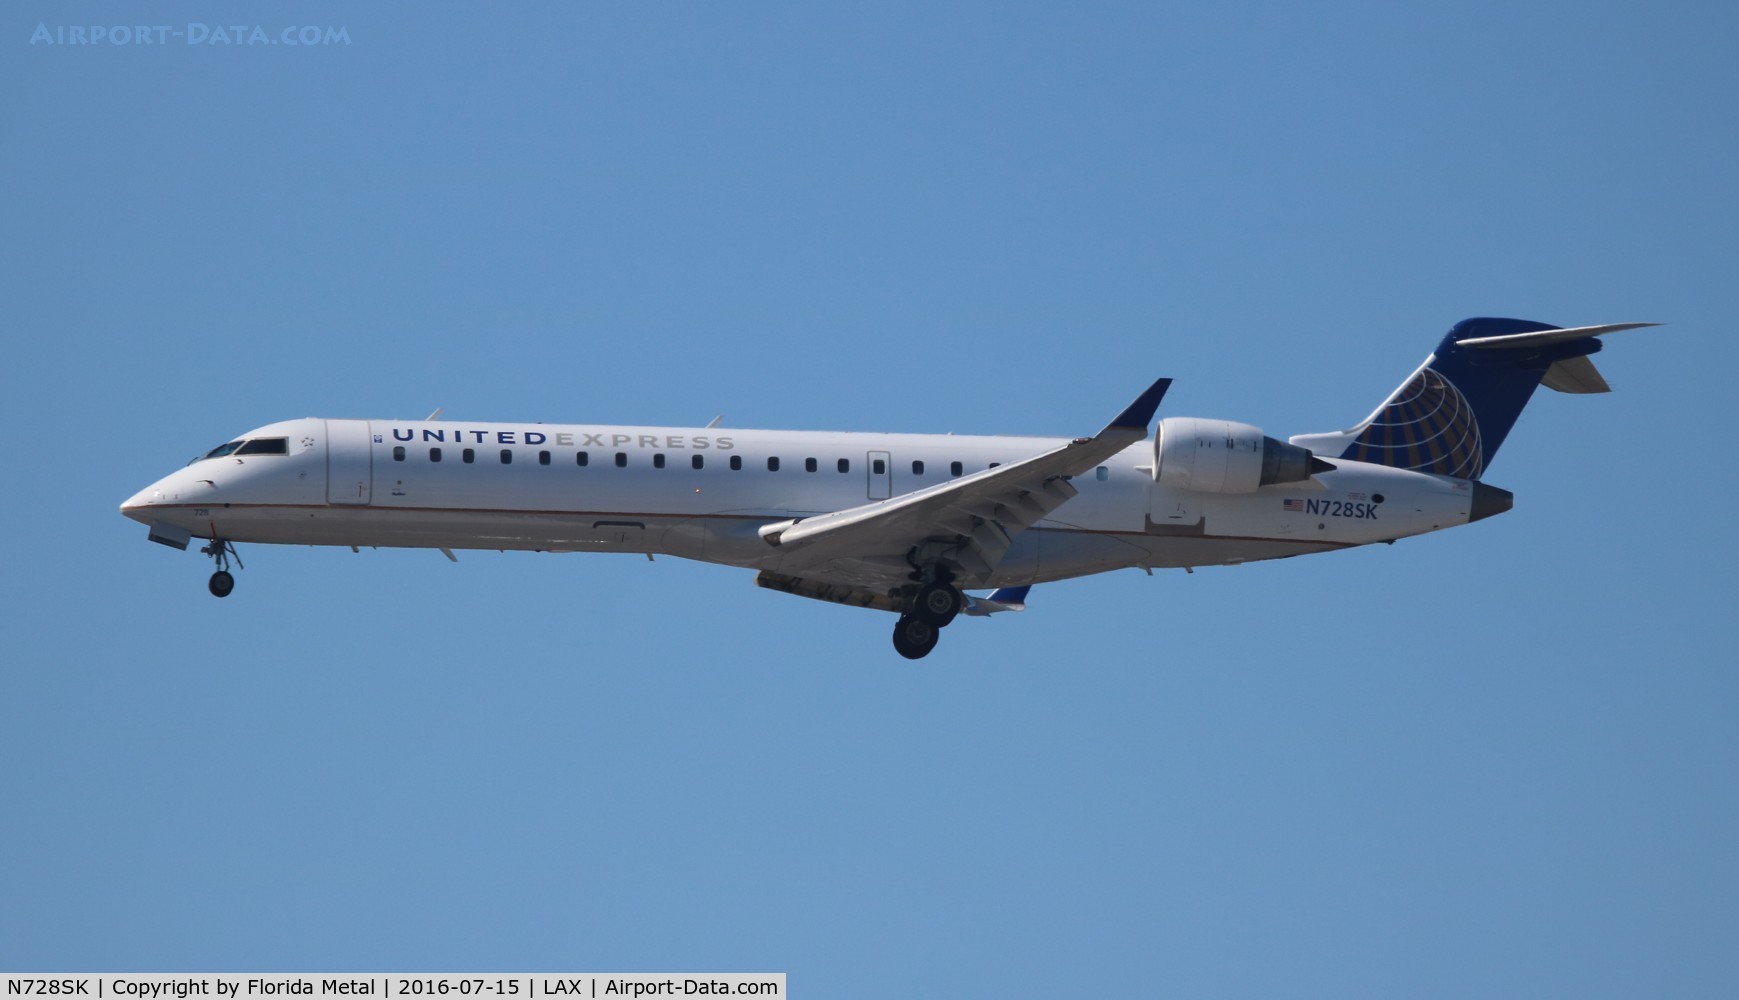 N728SK, 2005 Bombardier CRJ-701 (CL-600-2C10) Regional Jet C/N 10192, United Express